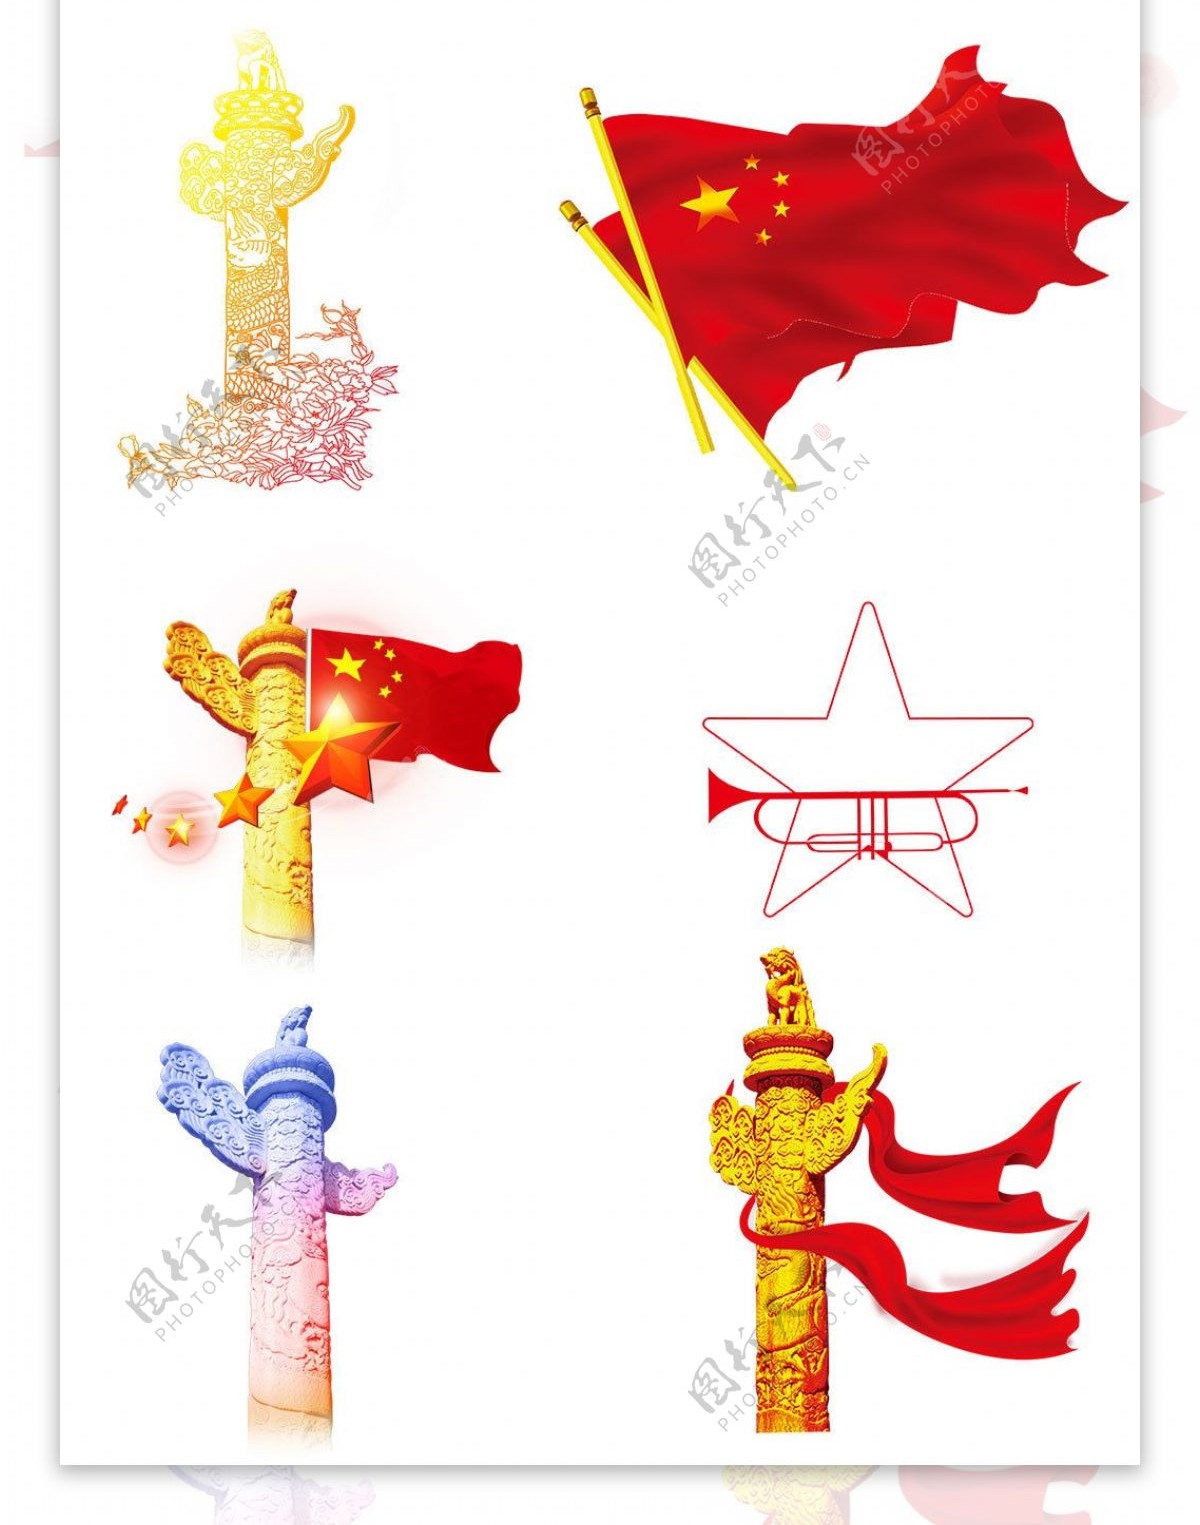 淘宝天猫国庆节设计素材红旗怀表天安门模板